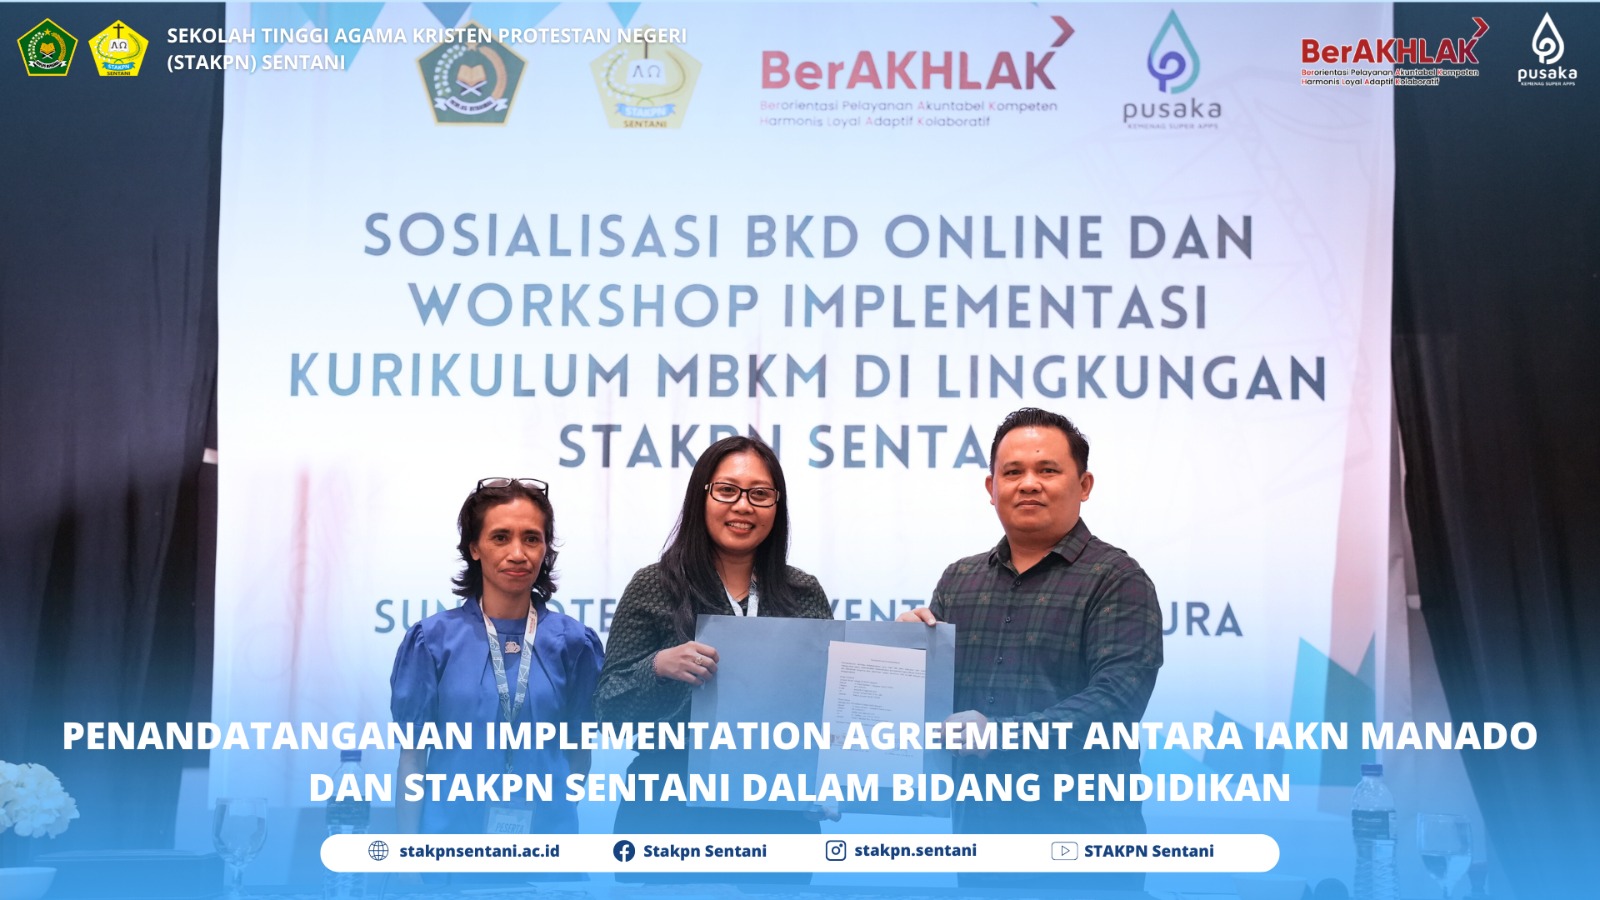 Penandatanganan Implementation Agreement (IA) Antara IAKN Manado dan STAKPN Sentani Dalam Bidang Pendidikan